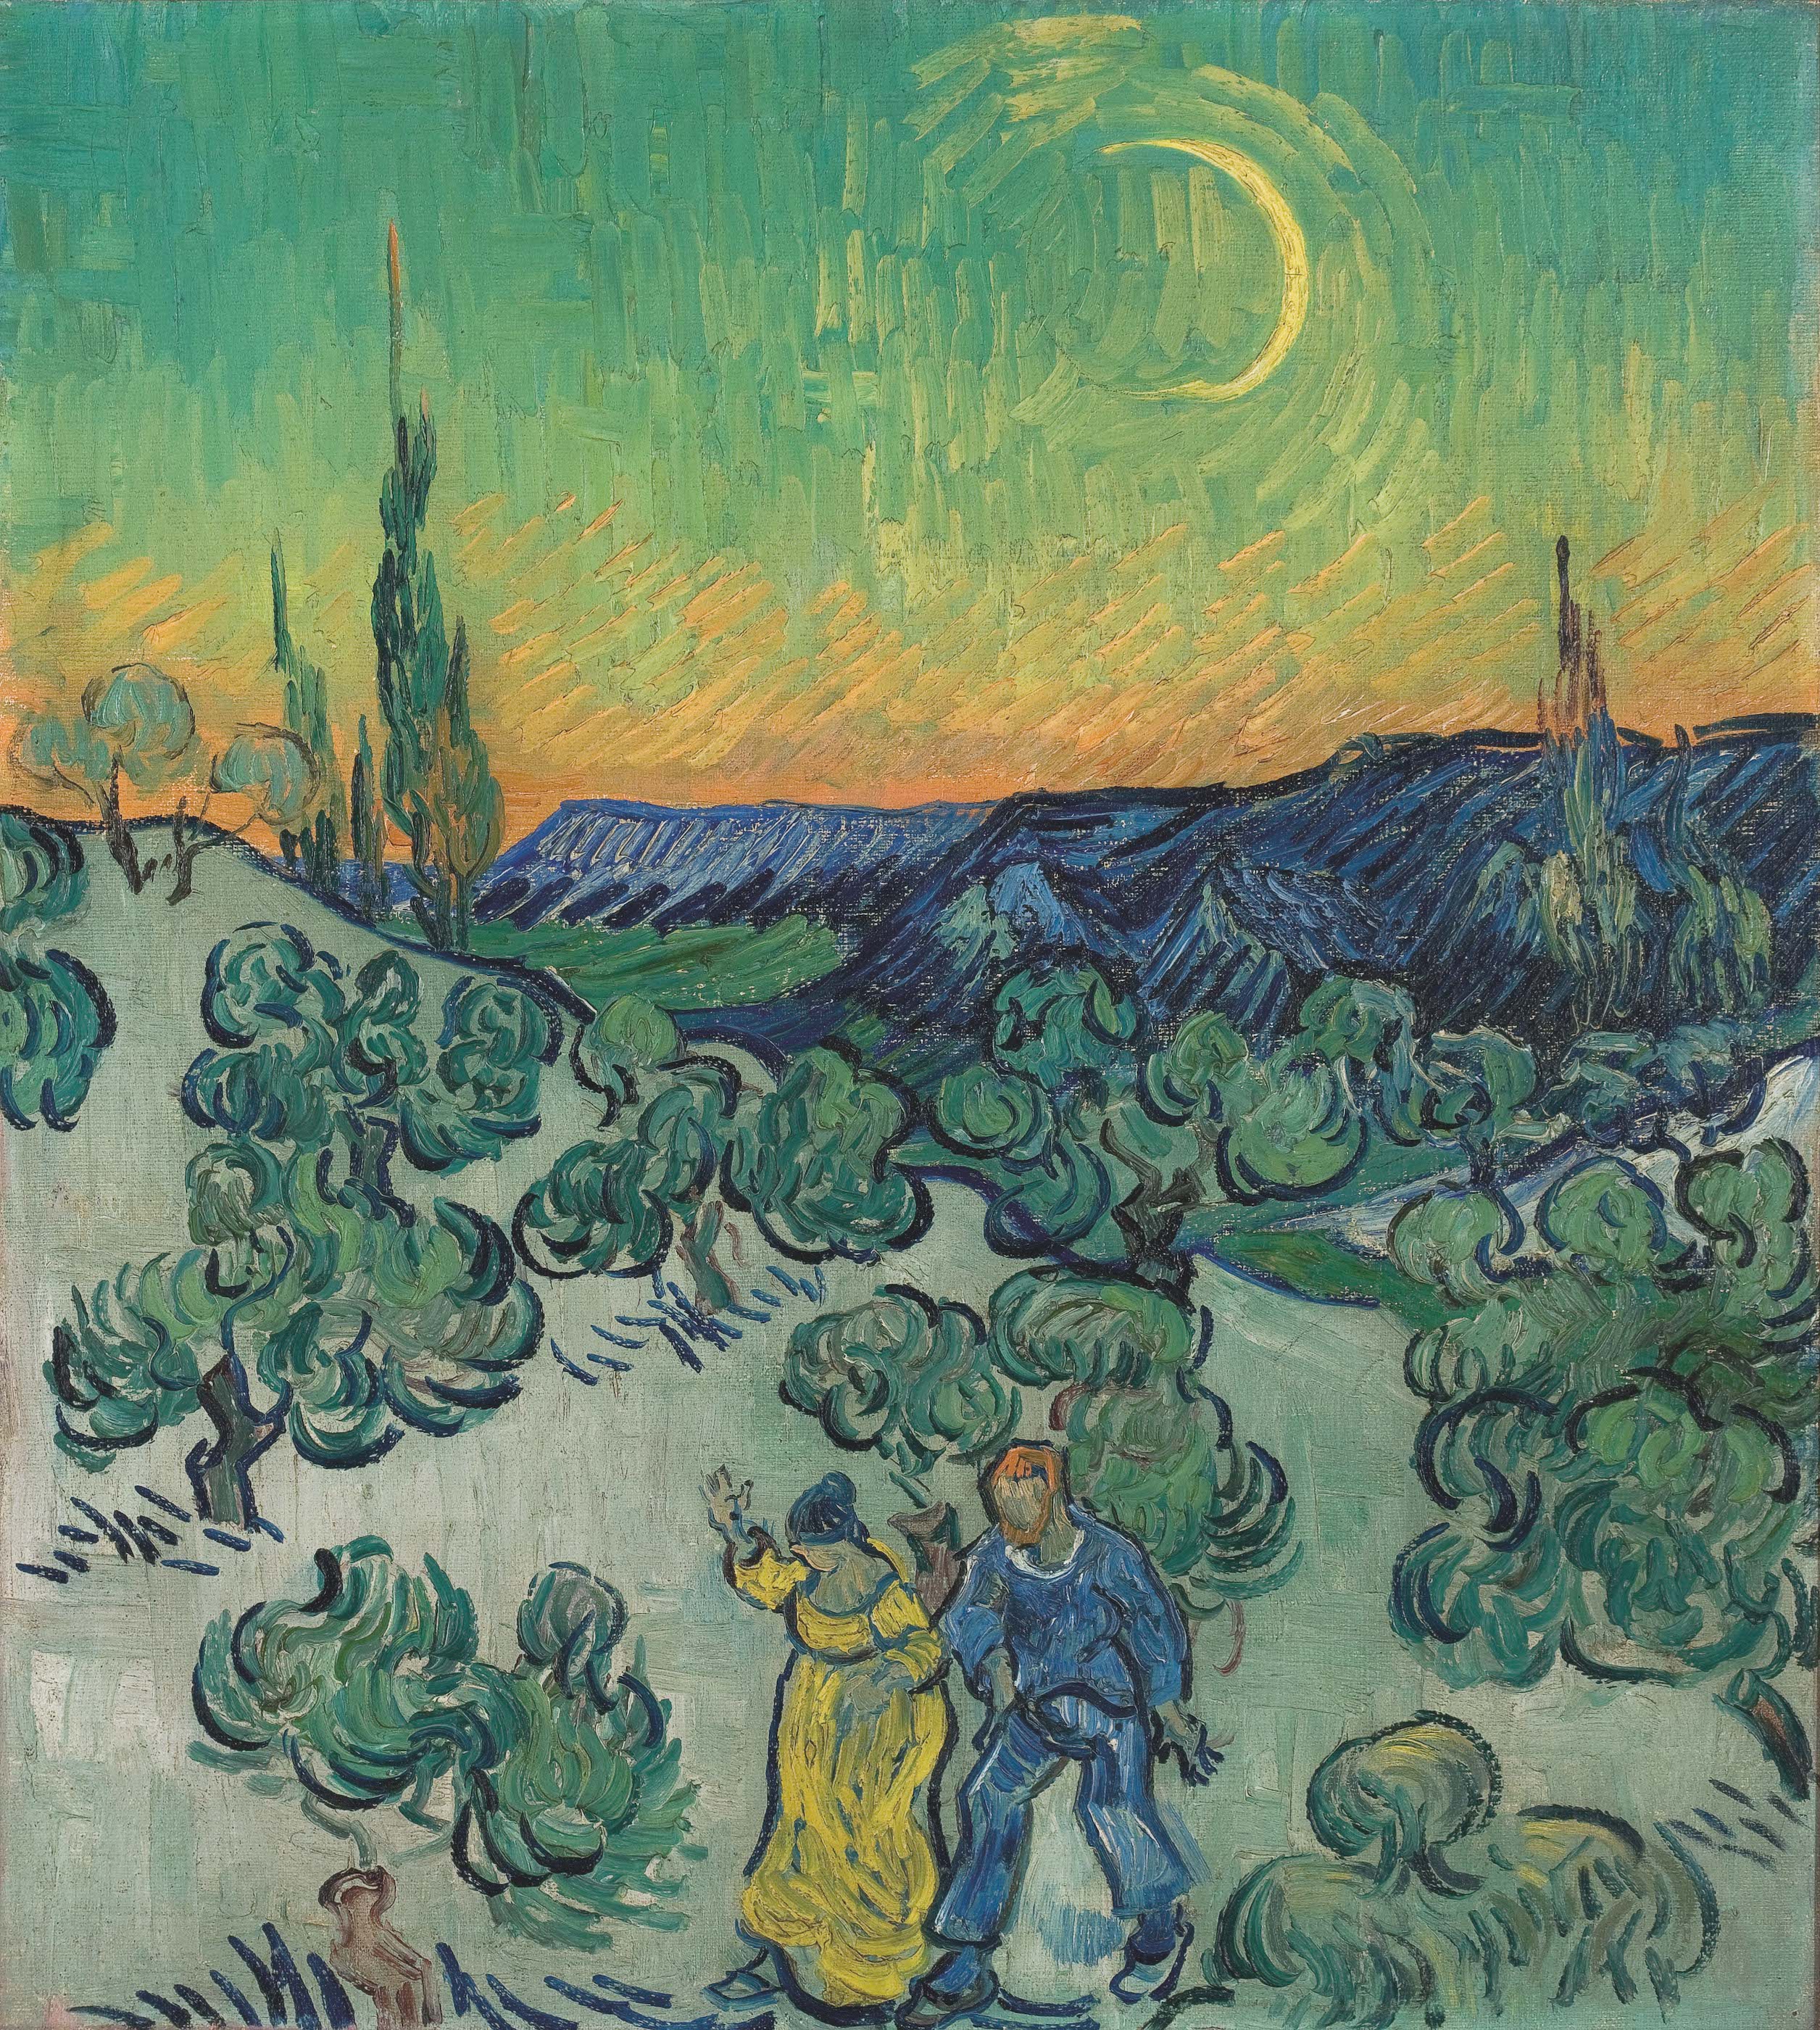 Passeio ao crepúsculo by Vincent van Gogh - 1889-1890 - 52 x 47 cm 